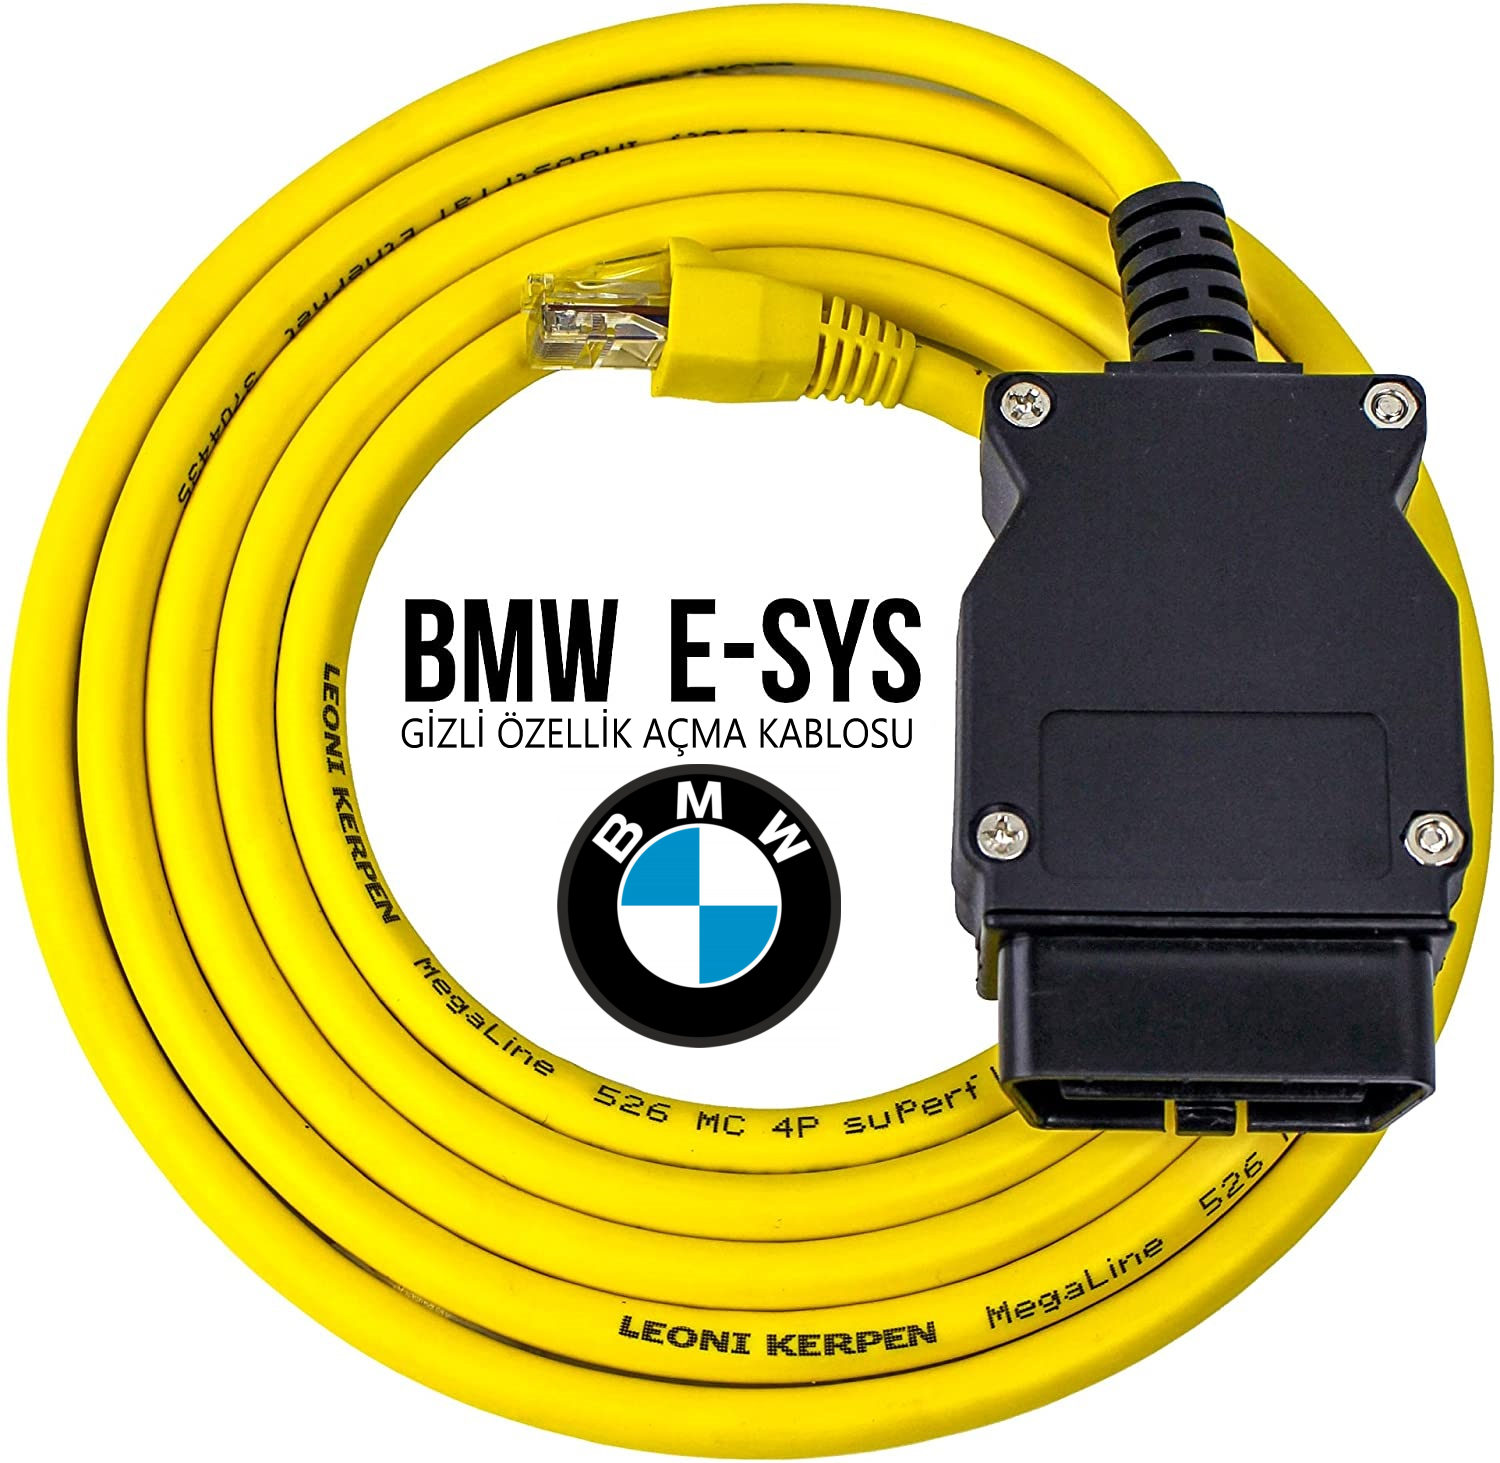 Bmw Enet E-SYS Gizli Özellik Açma Kablosu